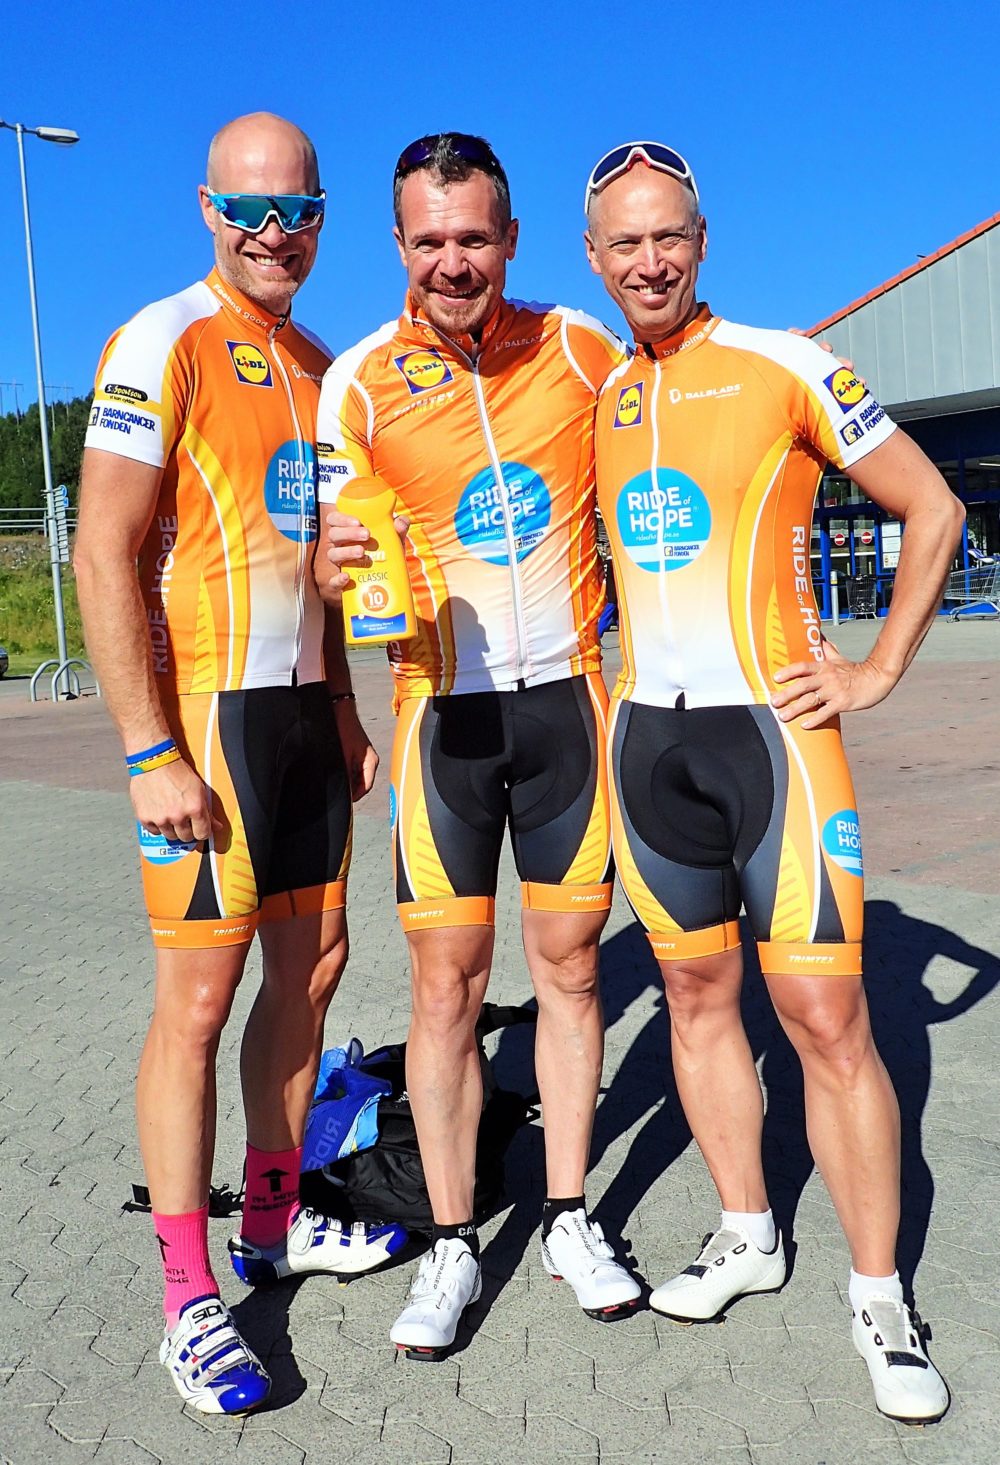 Strålande solsken vid starten i Örnsköldsvik. Givetvis matchade vi solkrämen med cykelkläderna! 